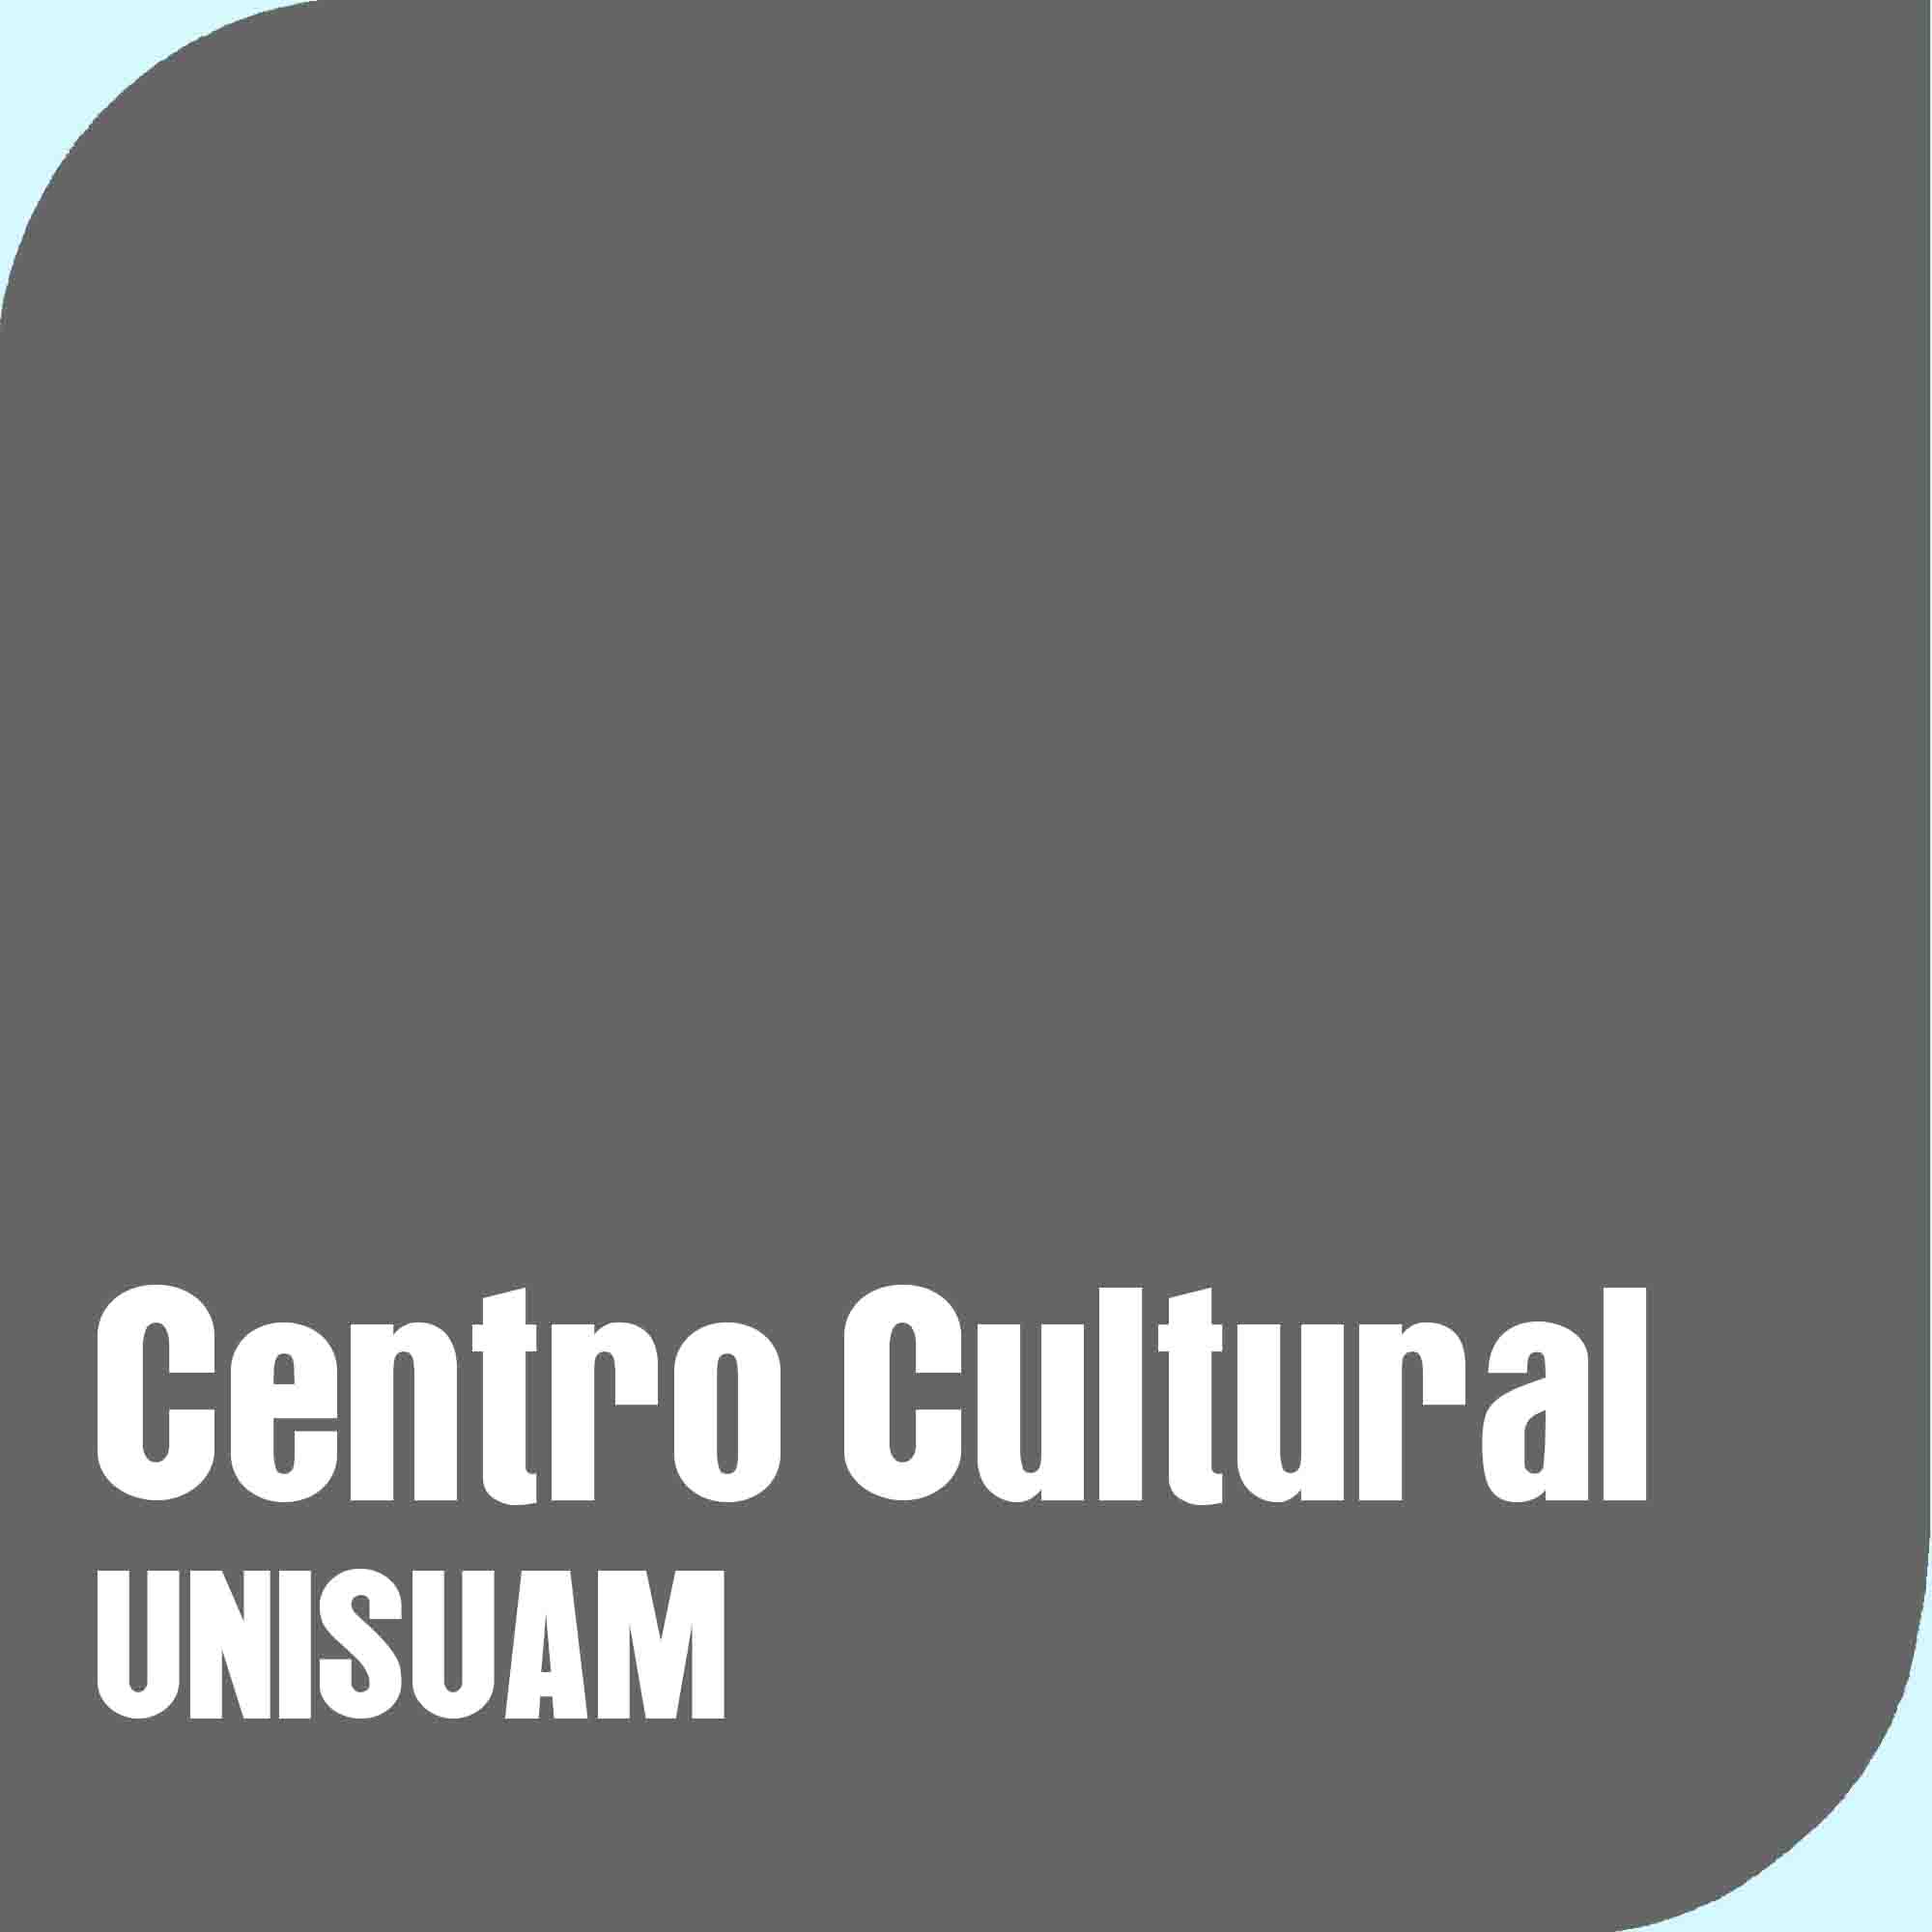 Centro Cultural UNISUAM